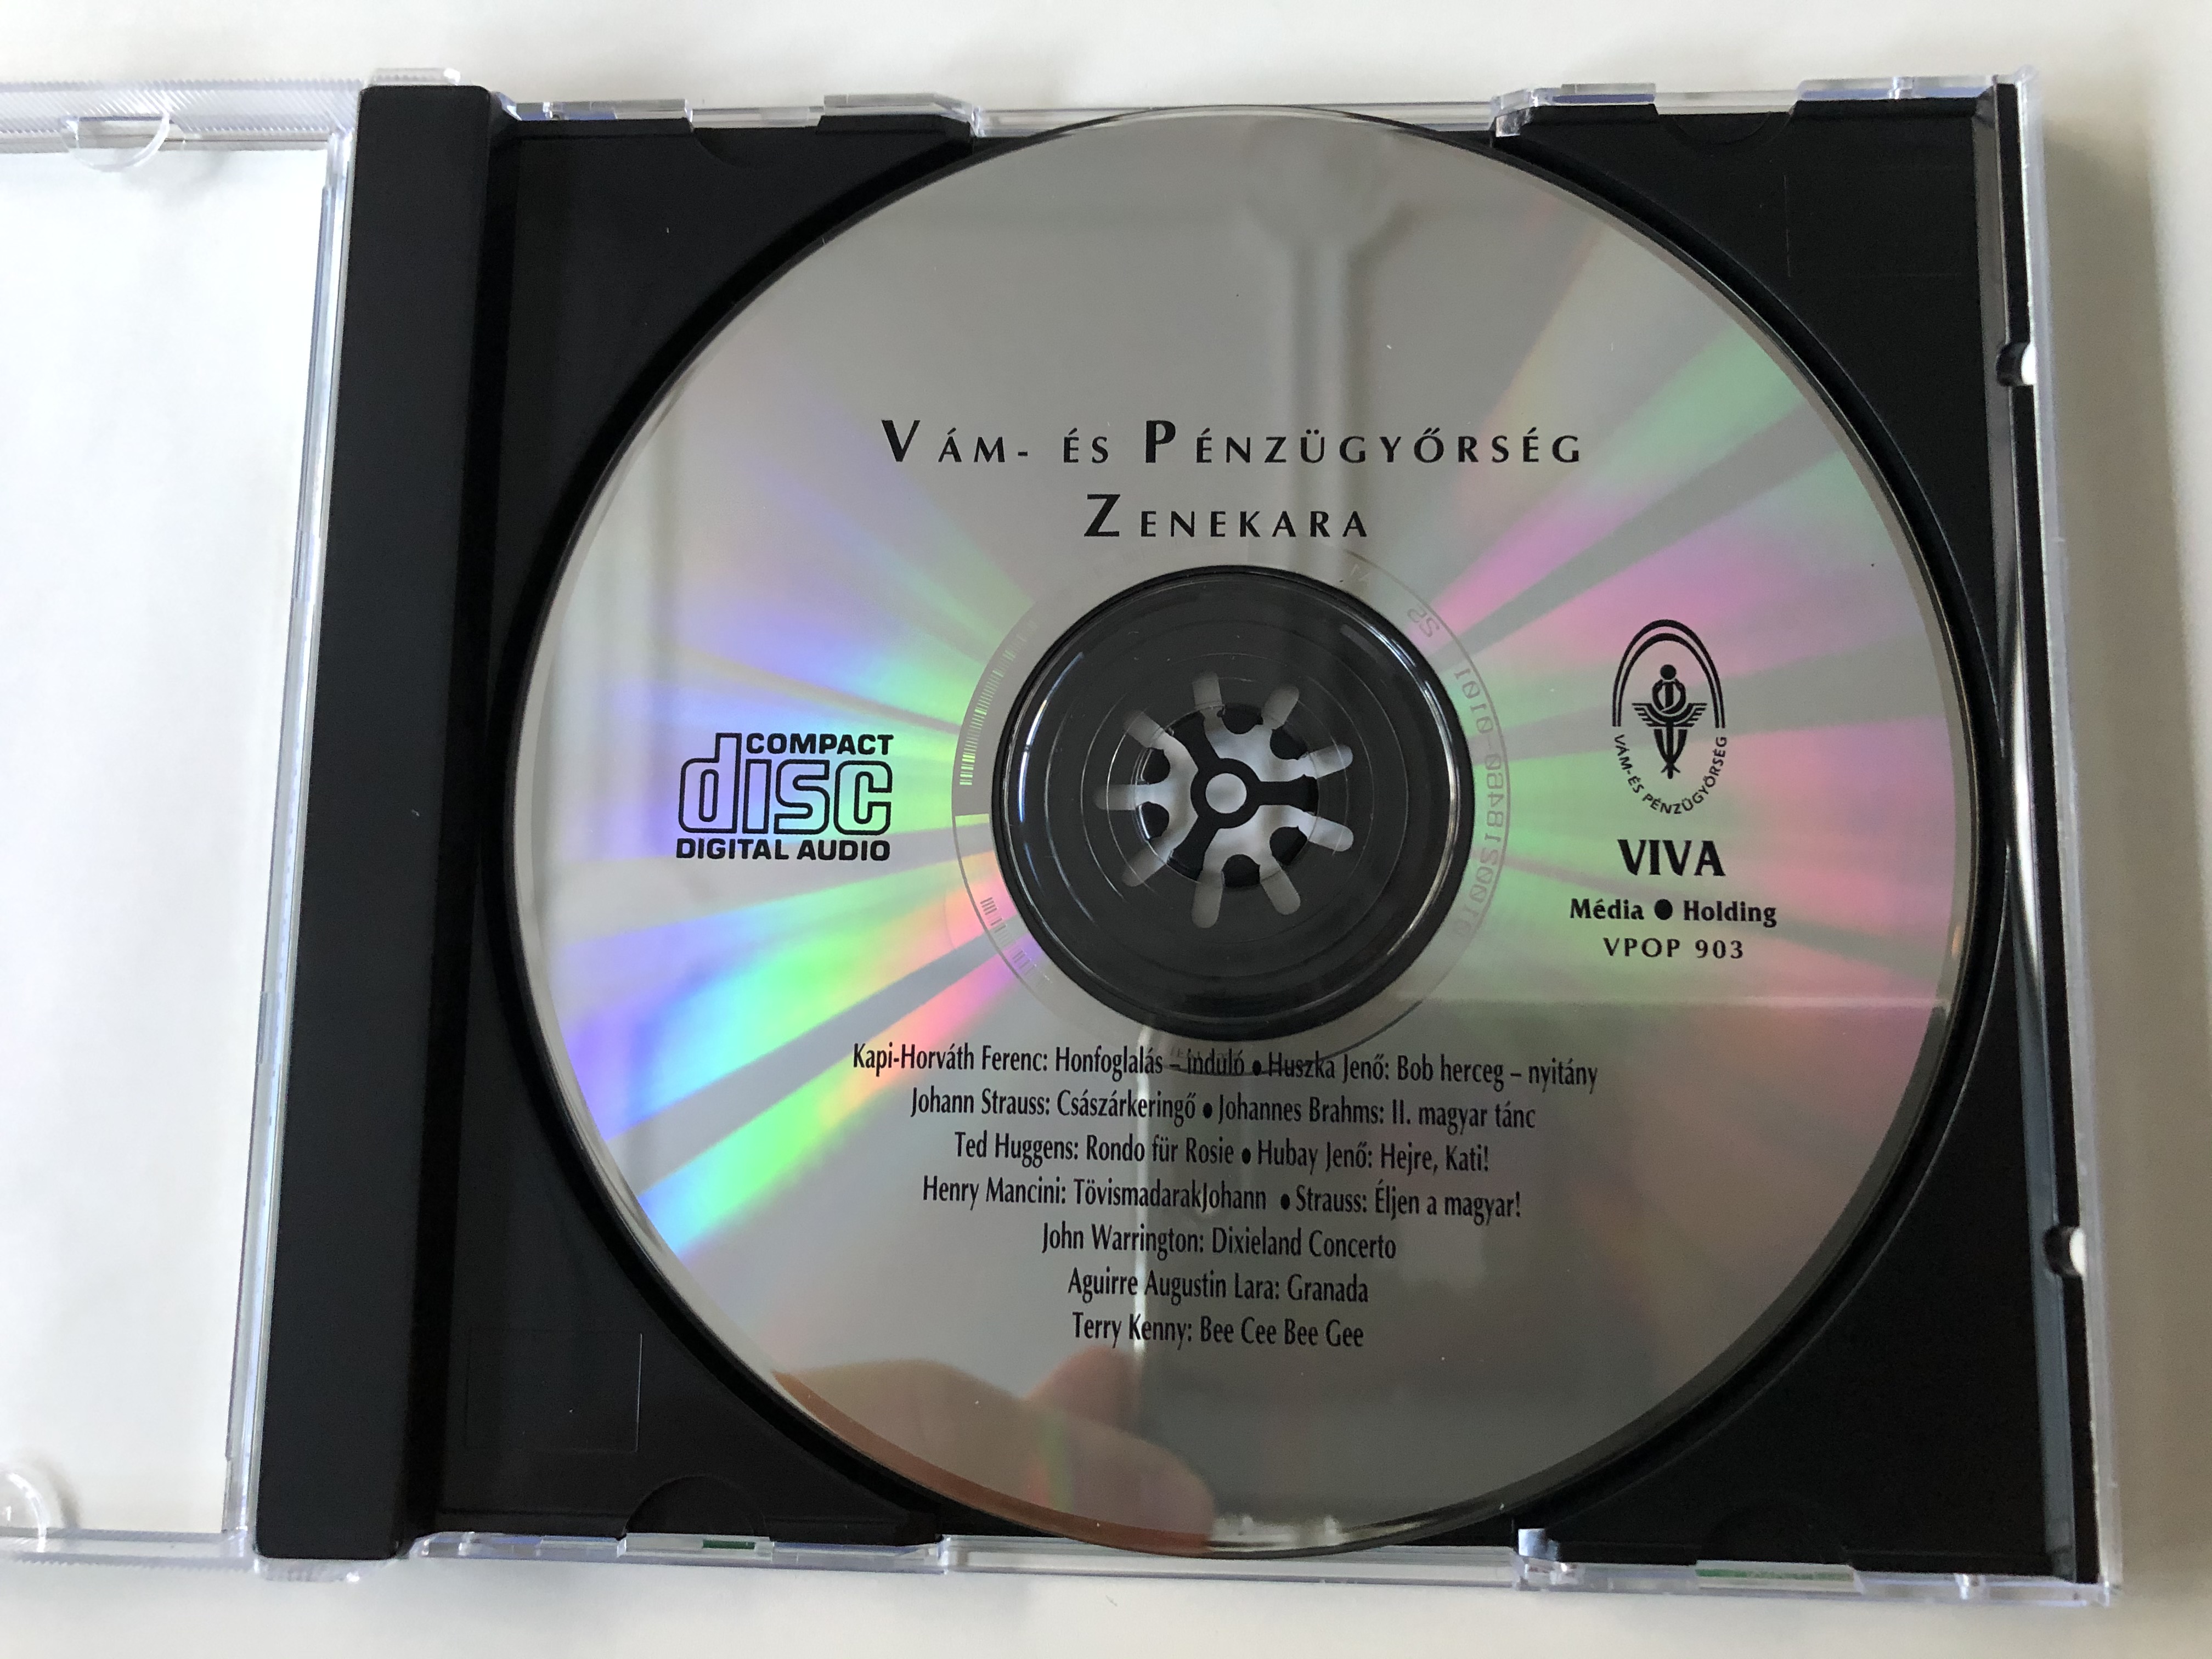 v-m-s-p-nz-gy-rseg-zenekara-viva-m-dia-holding-audio-cd-1997-vpop-903-2-.jpg